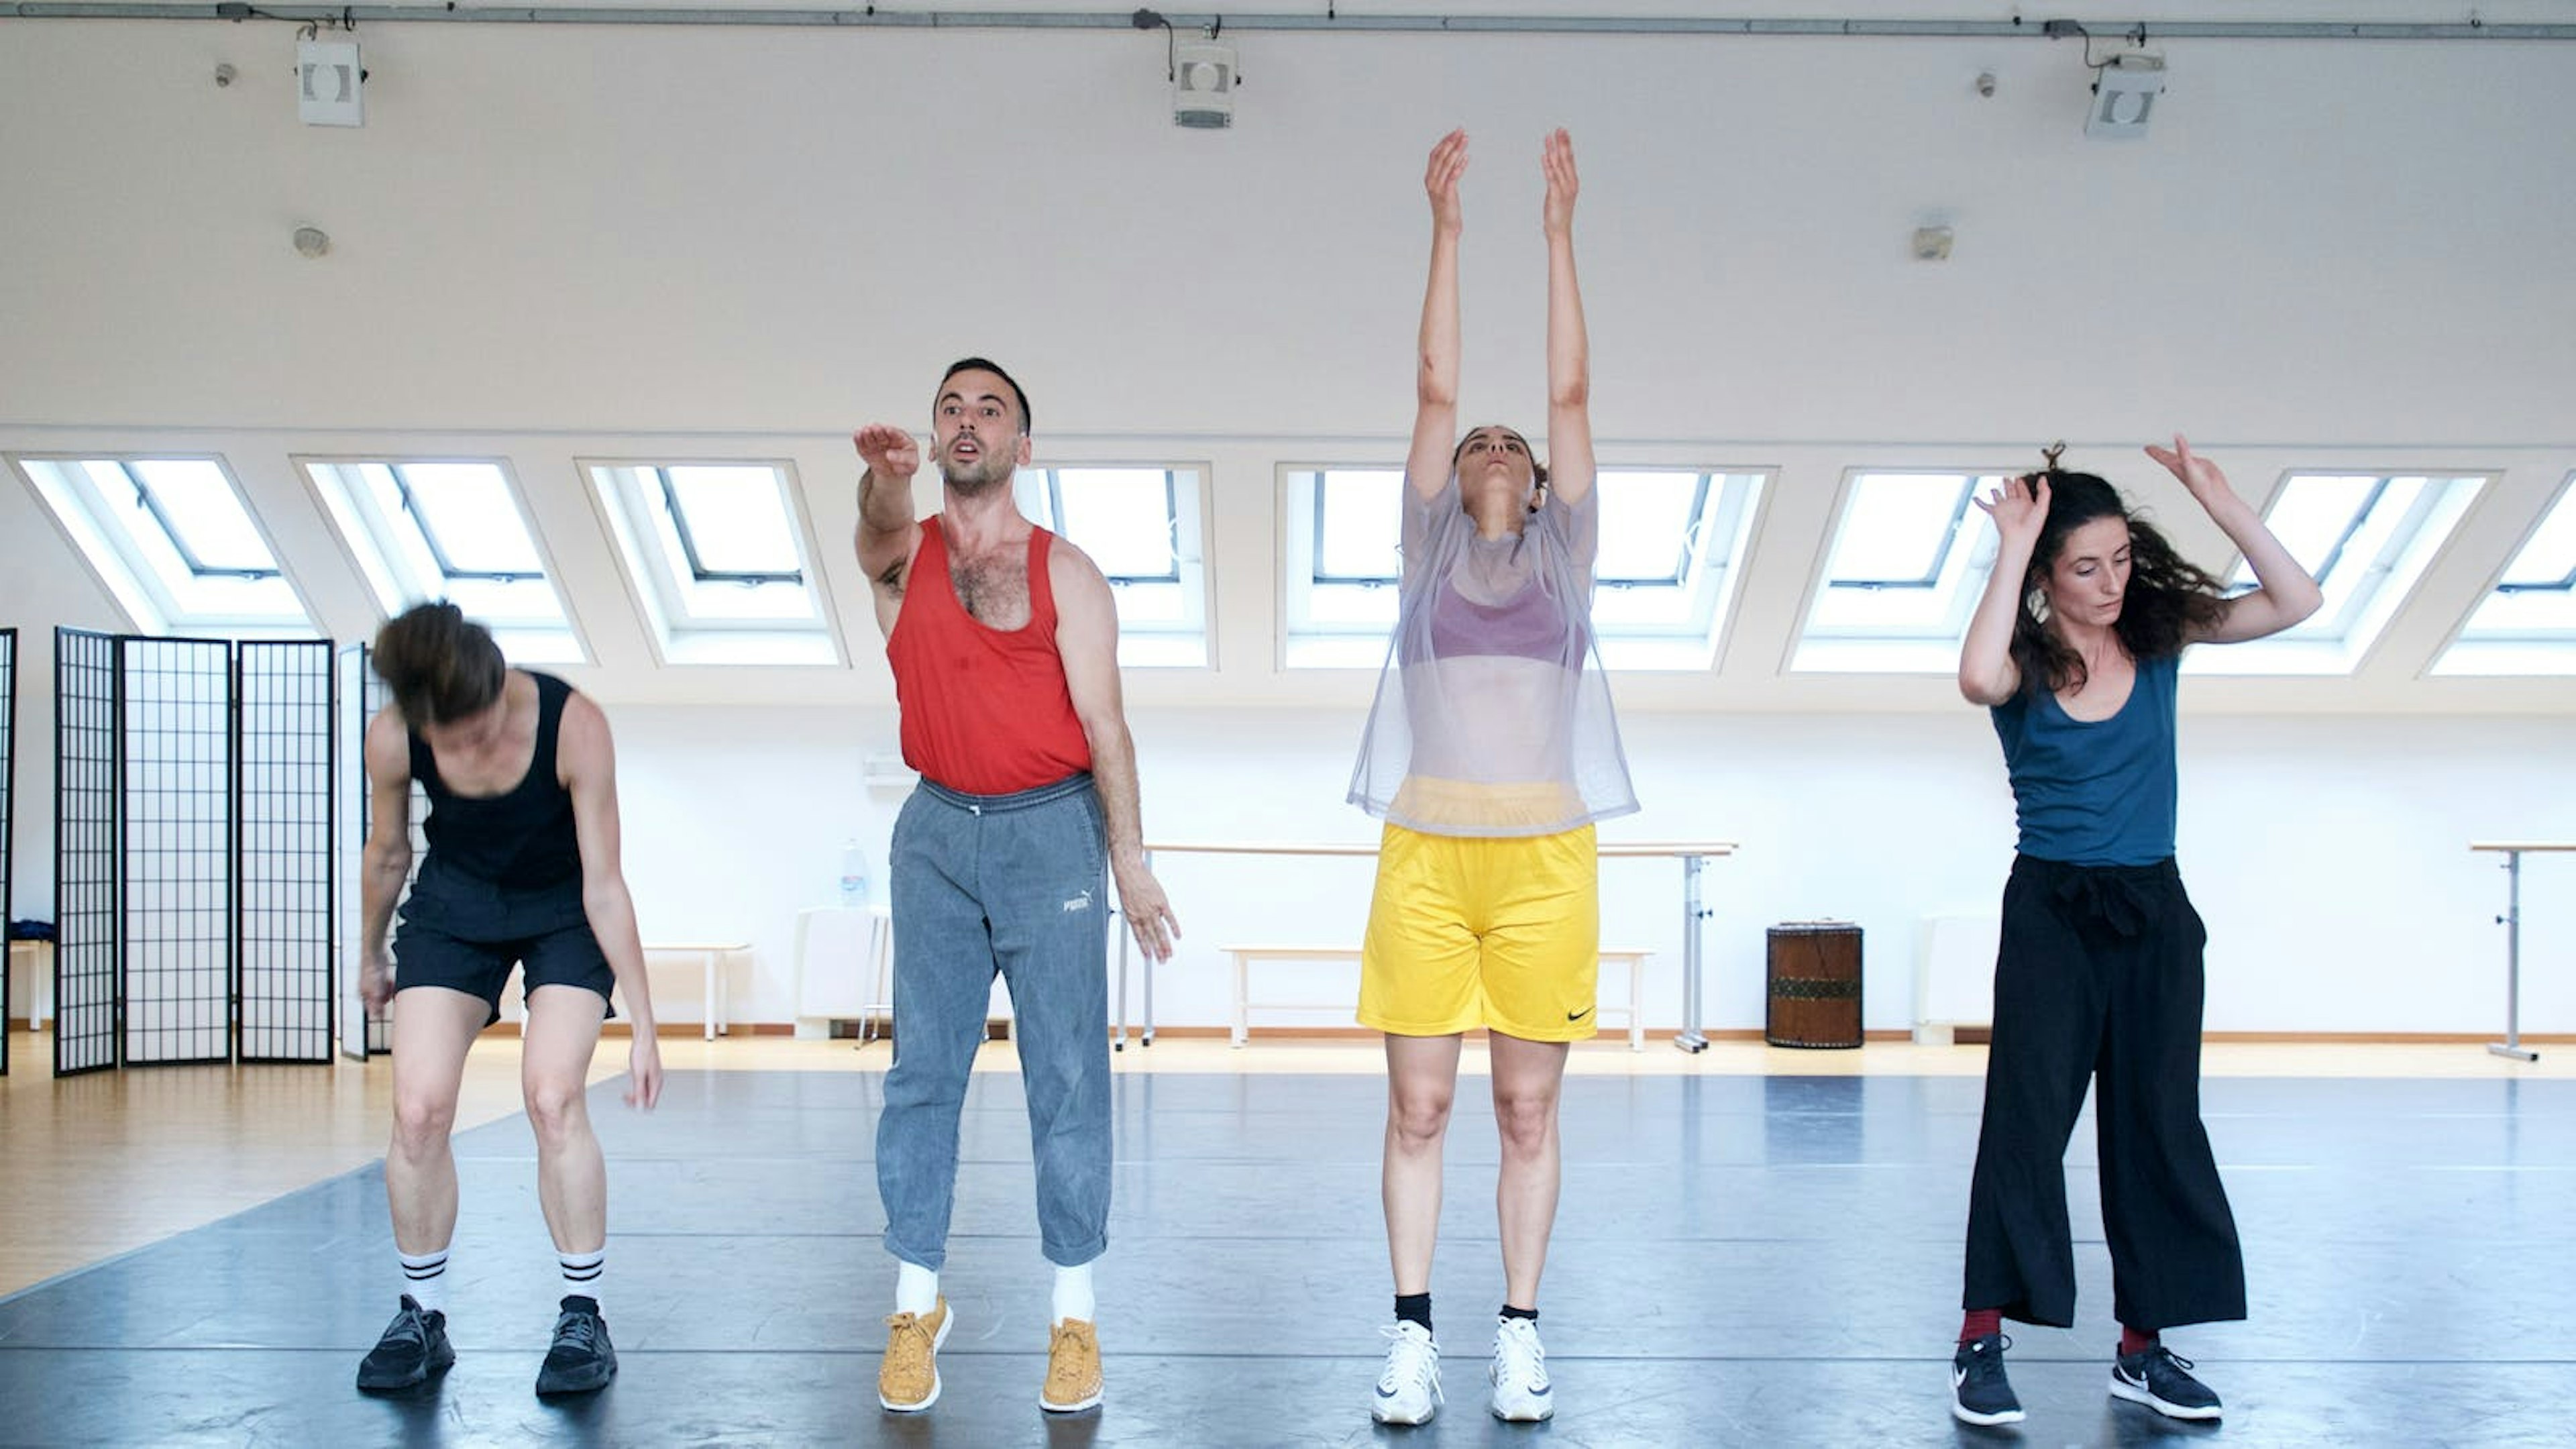 Quattro performer in fila orizzontale nello Studio fanno diversi movimenti con le braccia